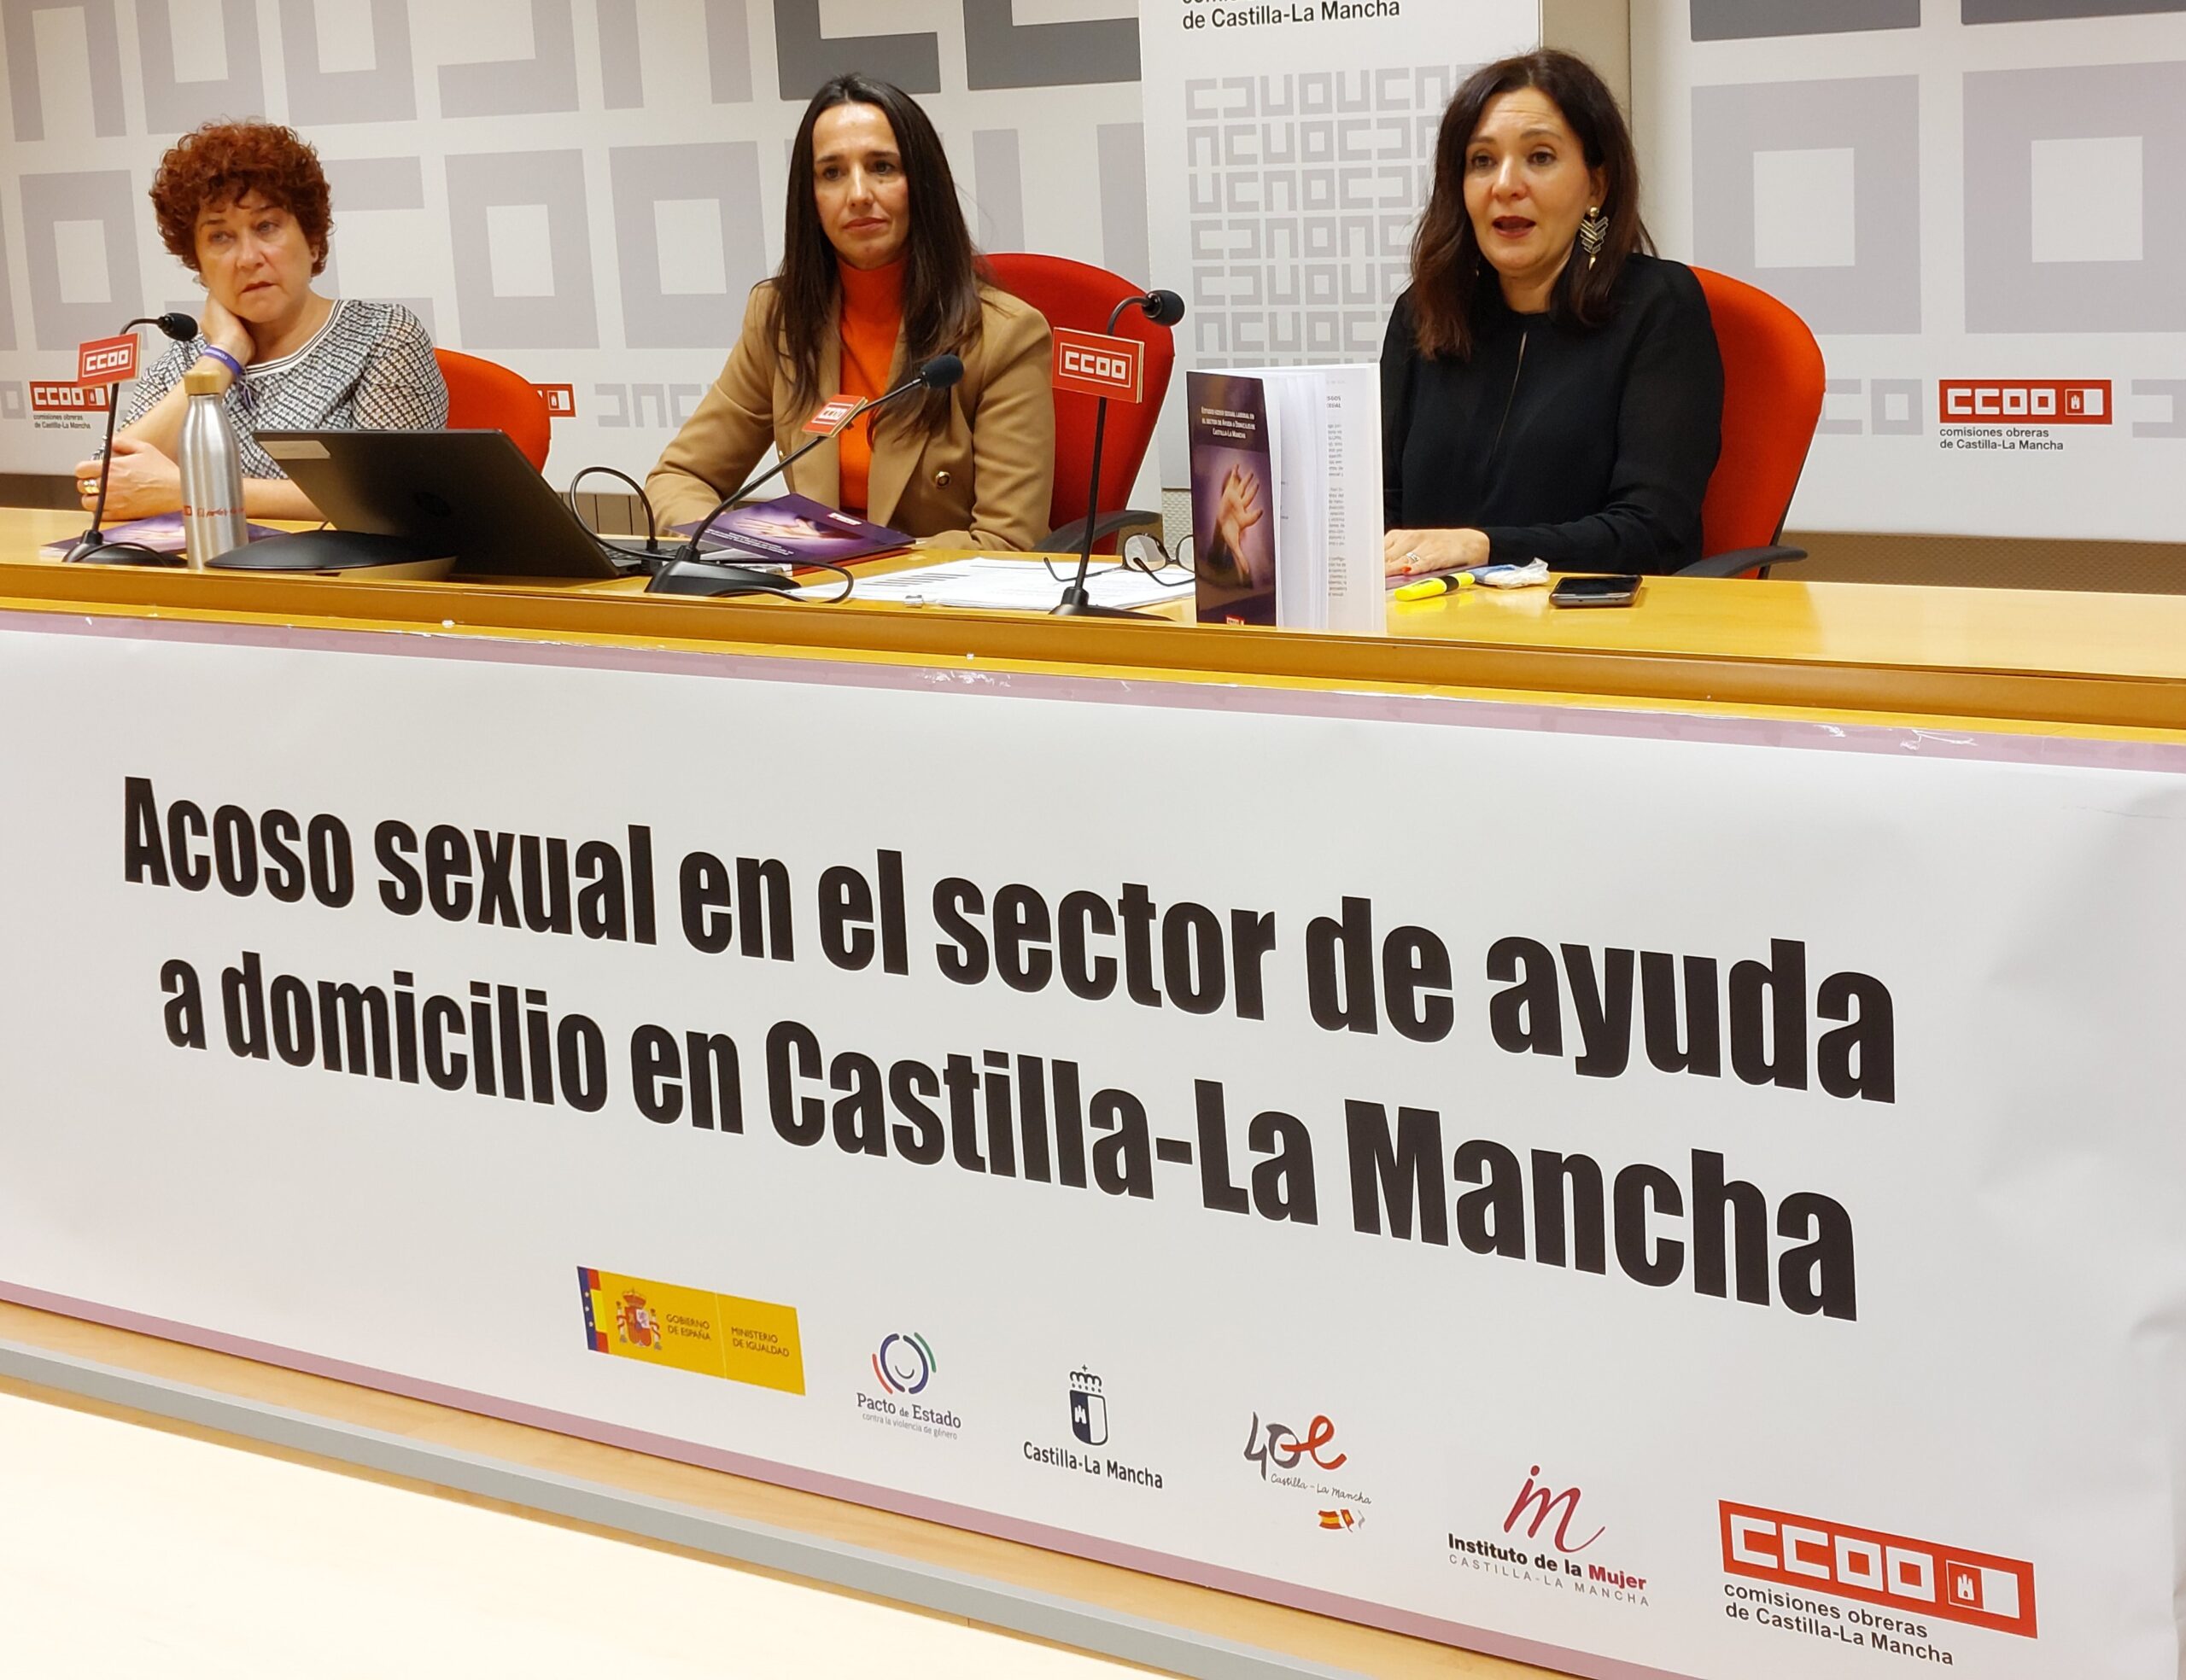 CCOO CLM ha elaborado un estudio sobre el acoso sexual laboral en el sector de la ayuda a domicilio.